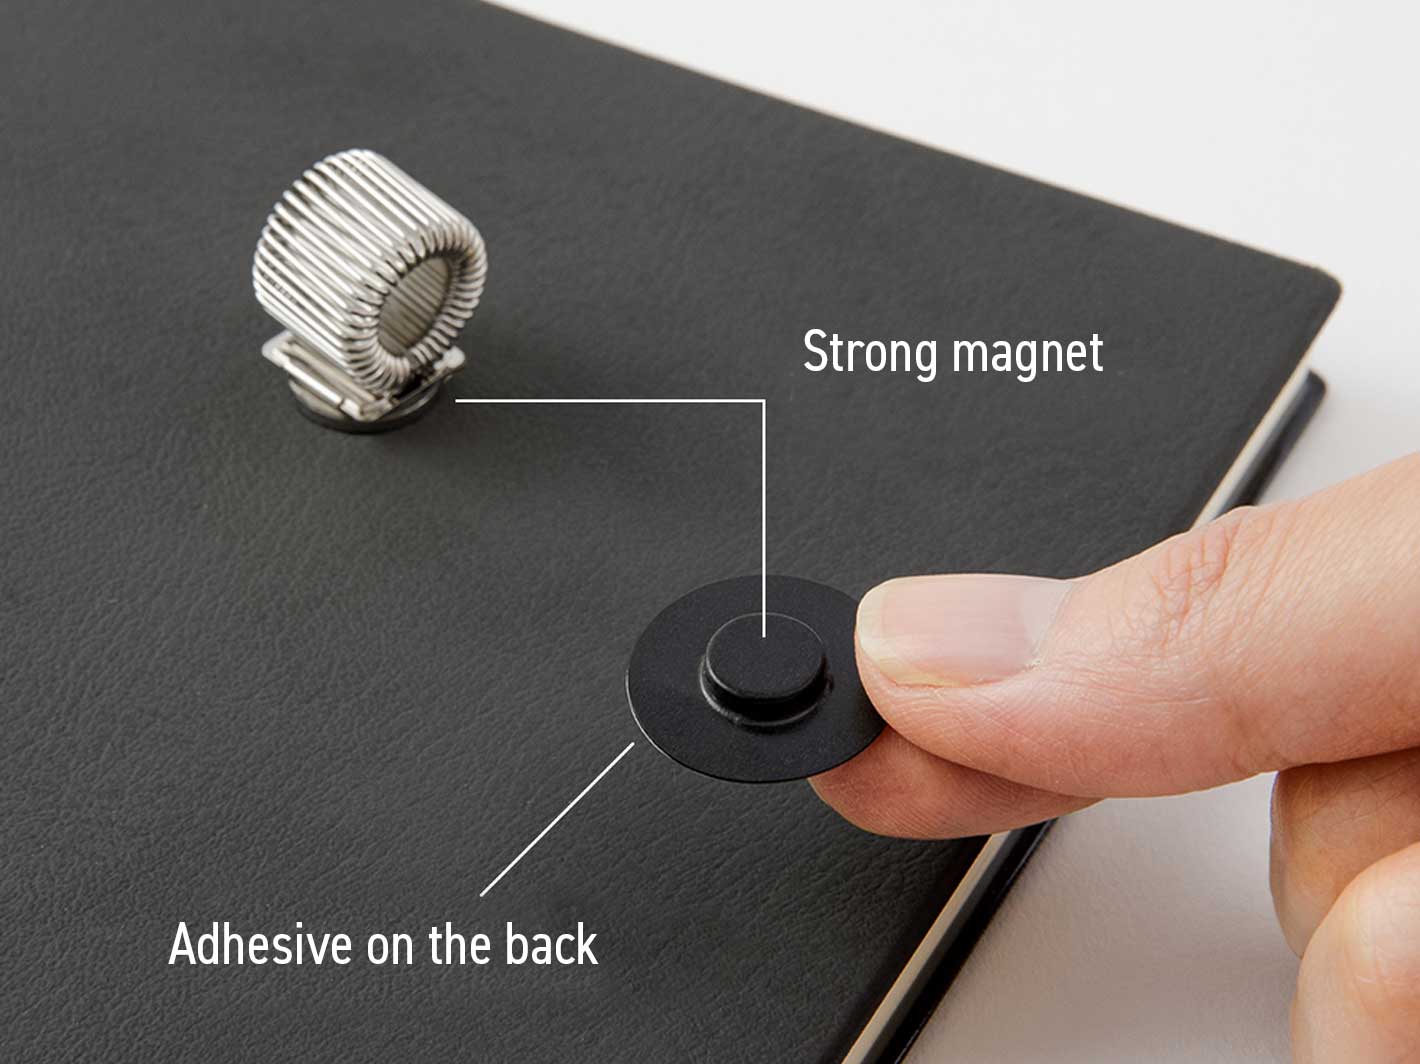 Magnet Penholder Silver